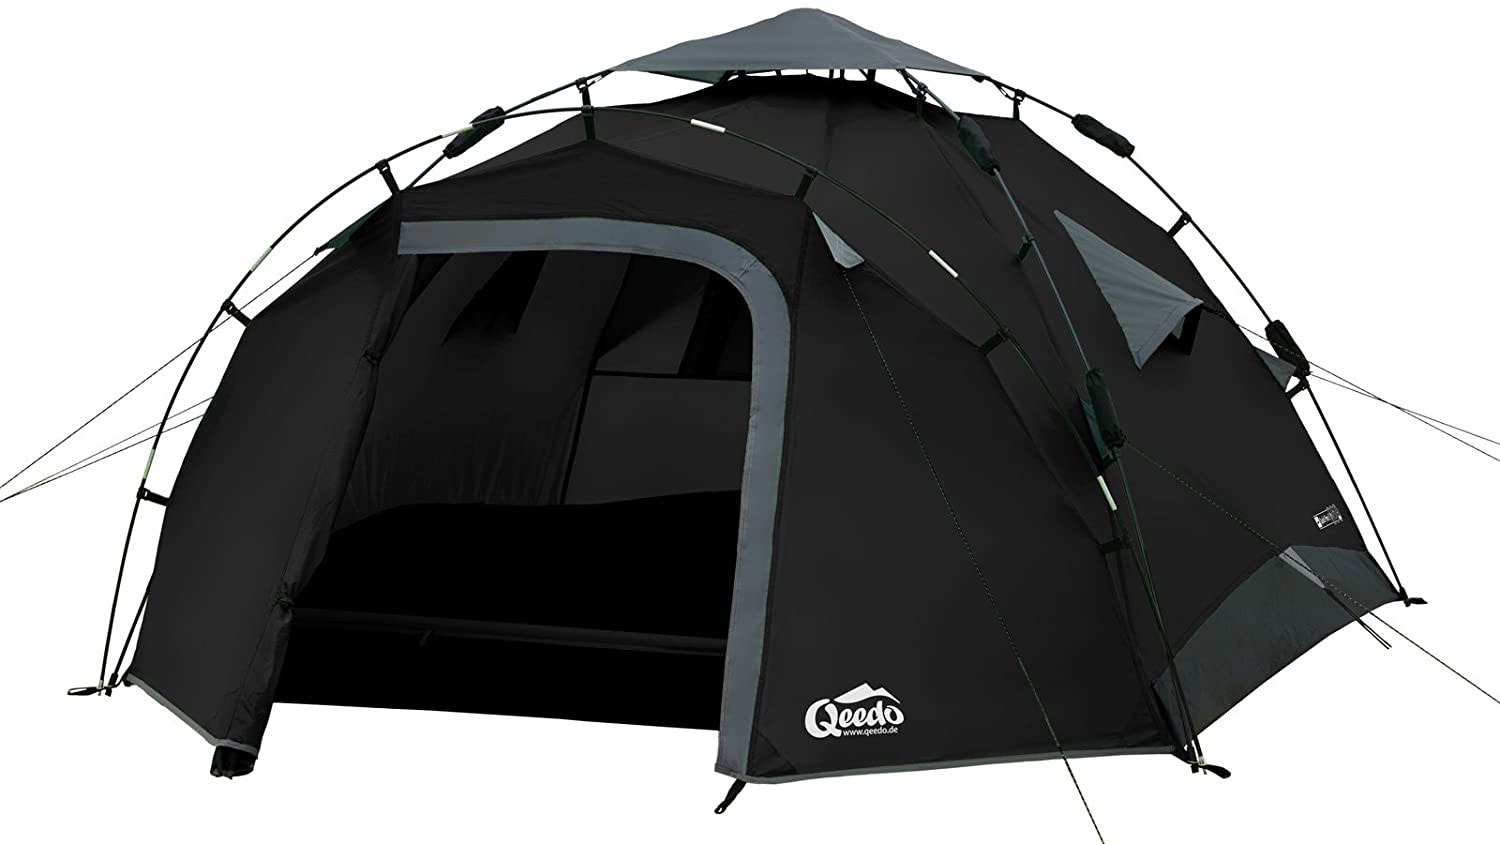 Qeedo Quick Pine pop-up tent